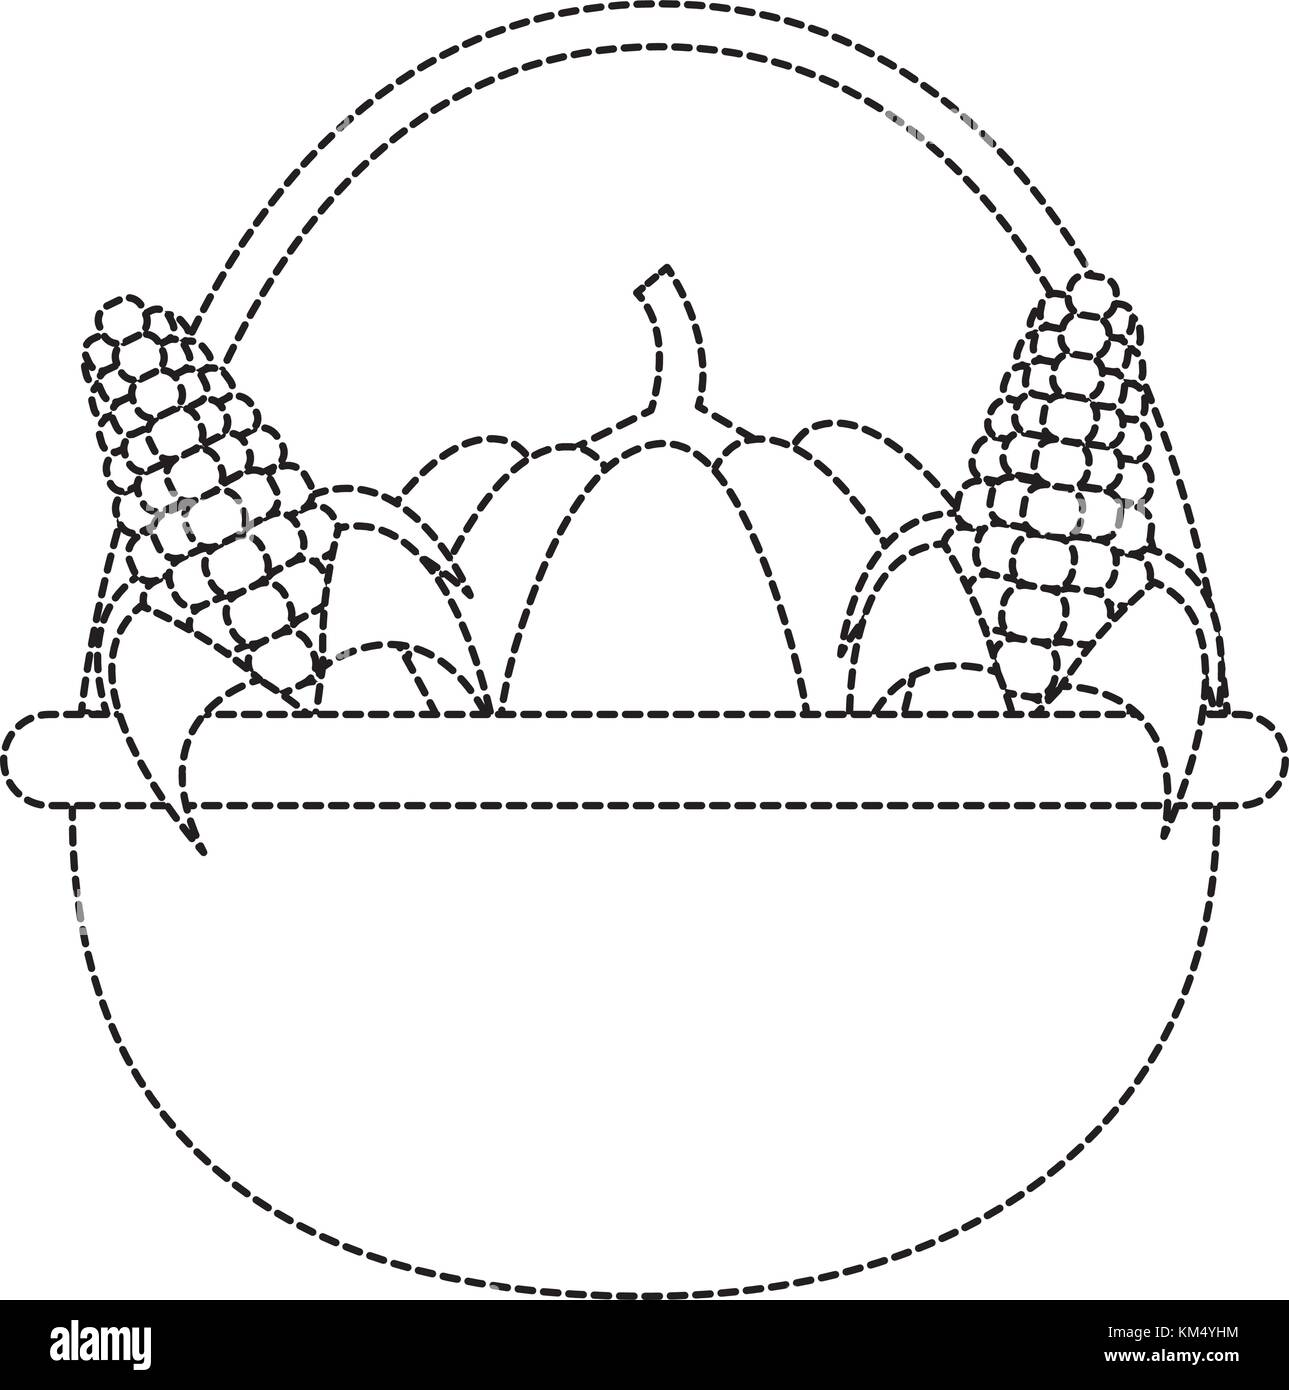 Pumpkins and corns design Stock Vector